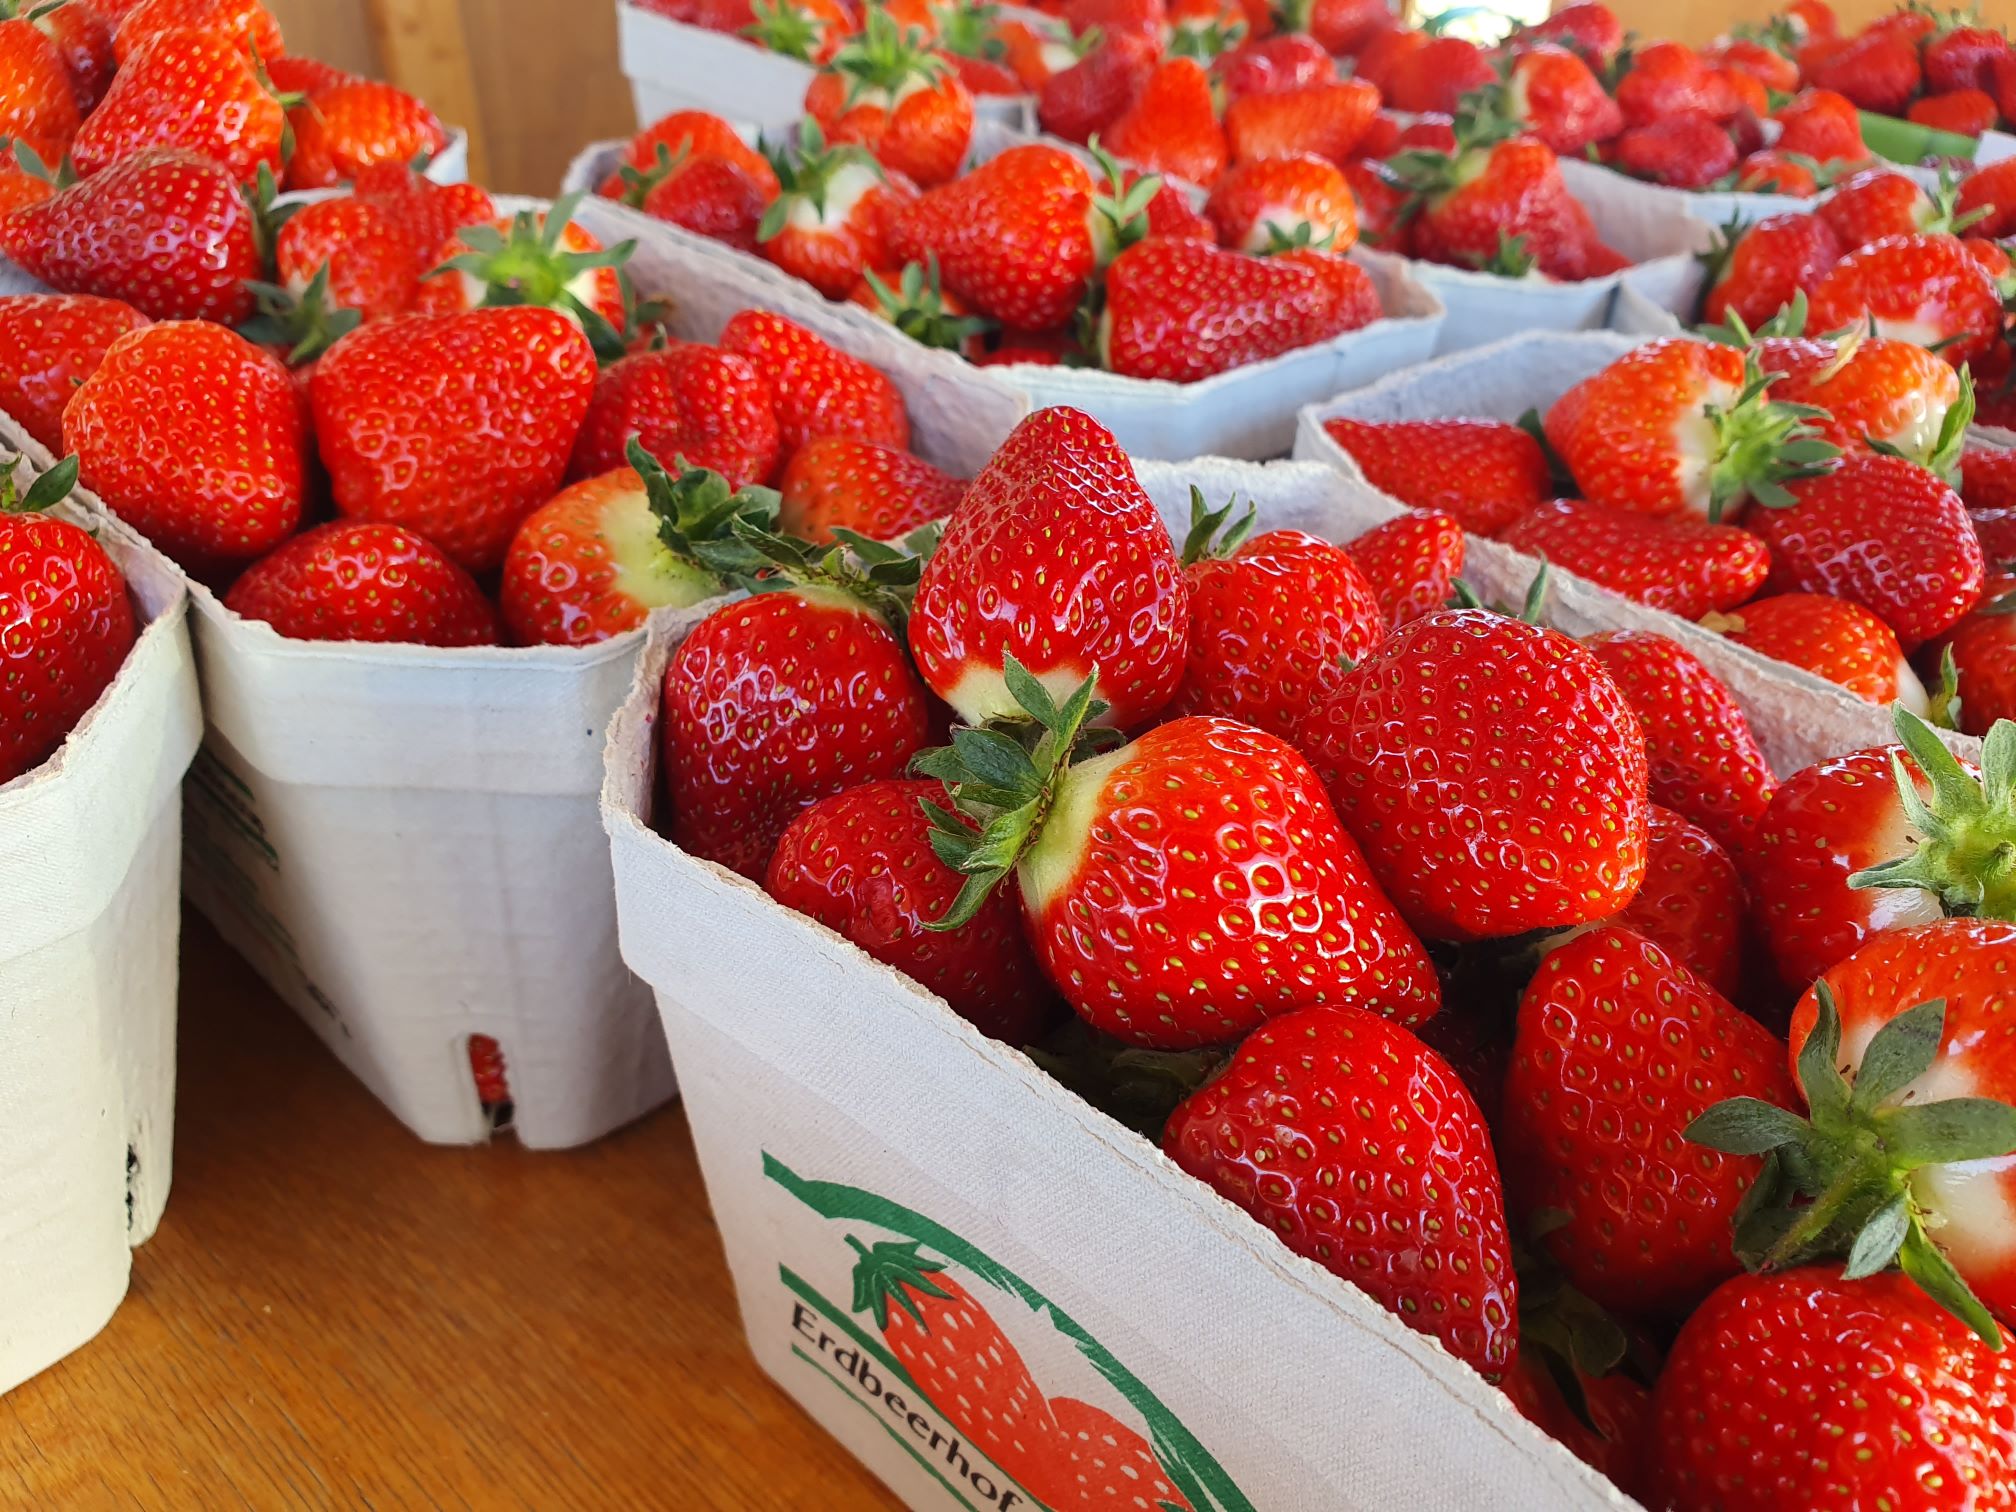 Endlich wieder leckere, frische Erdbeeren!